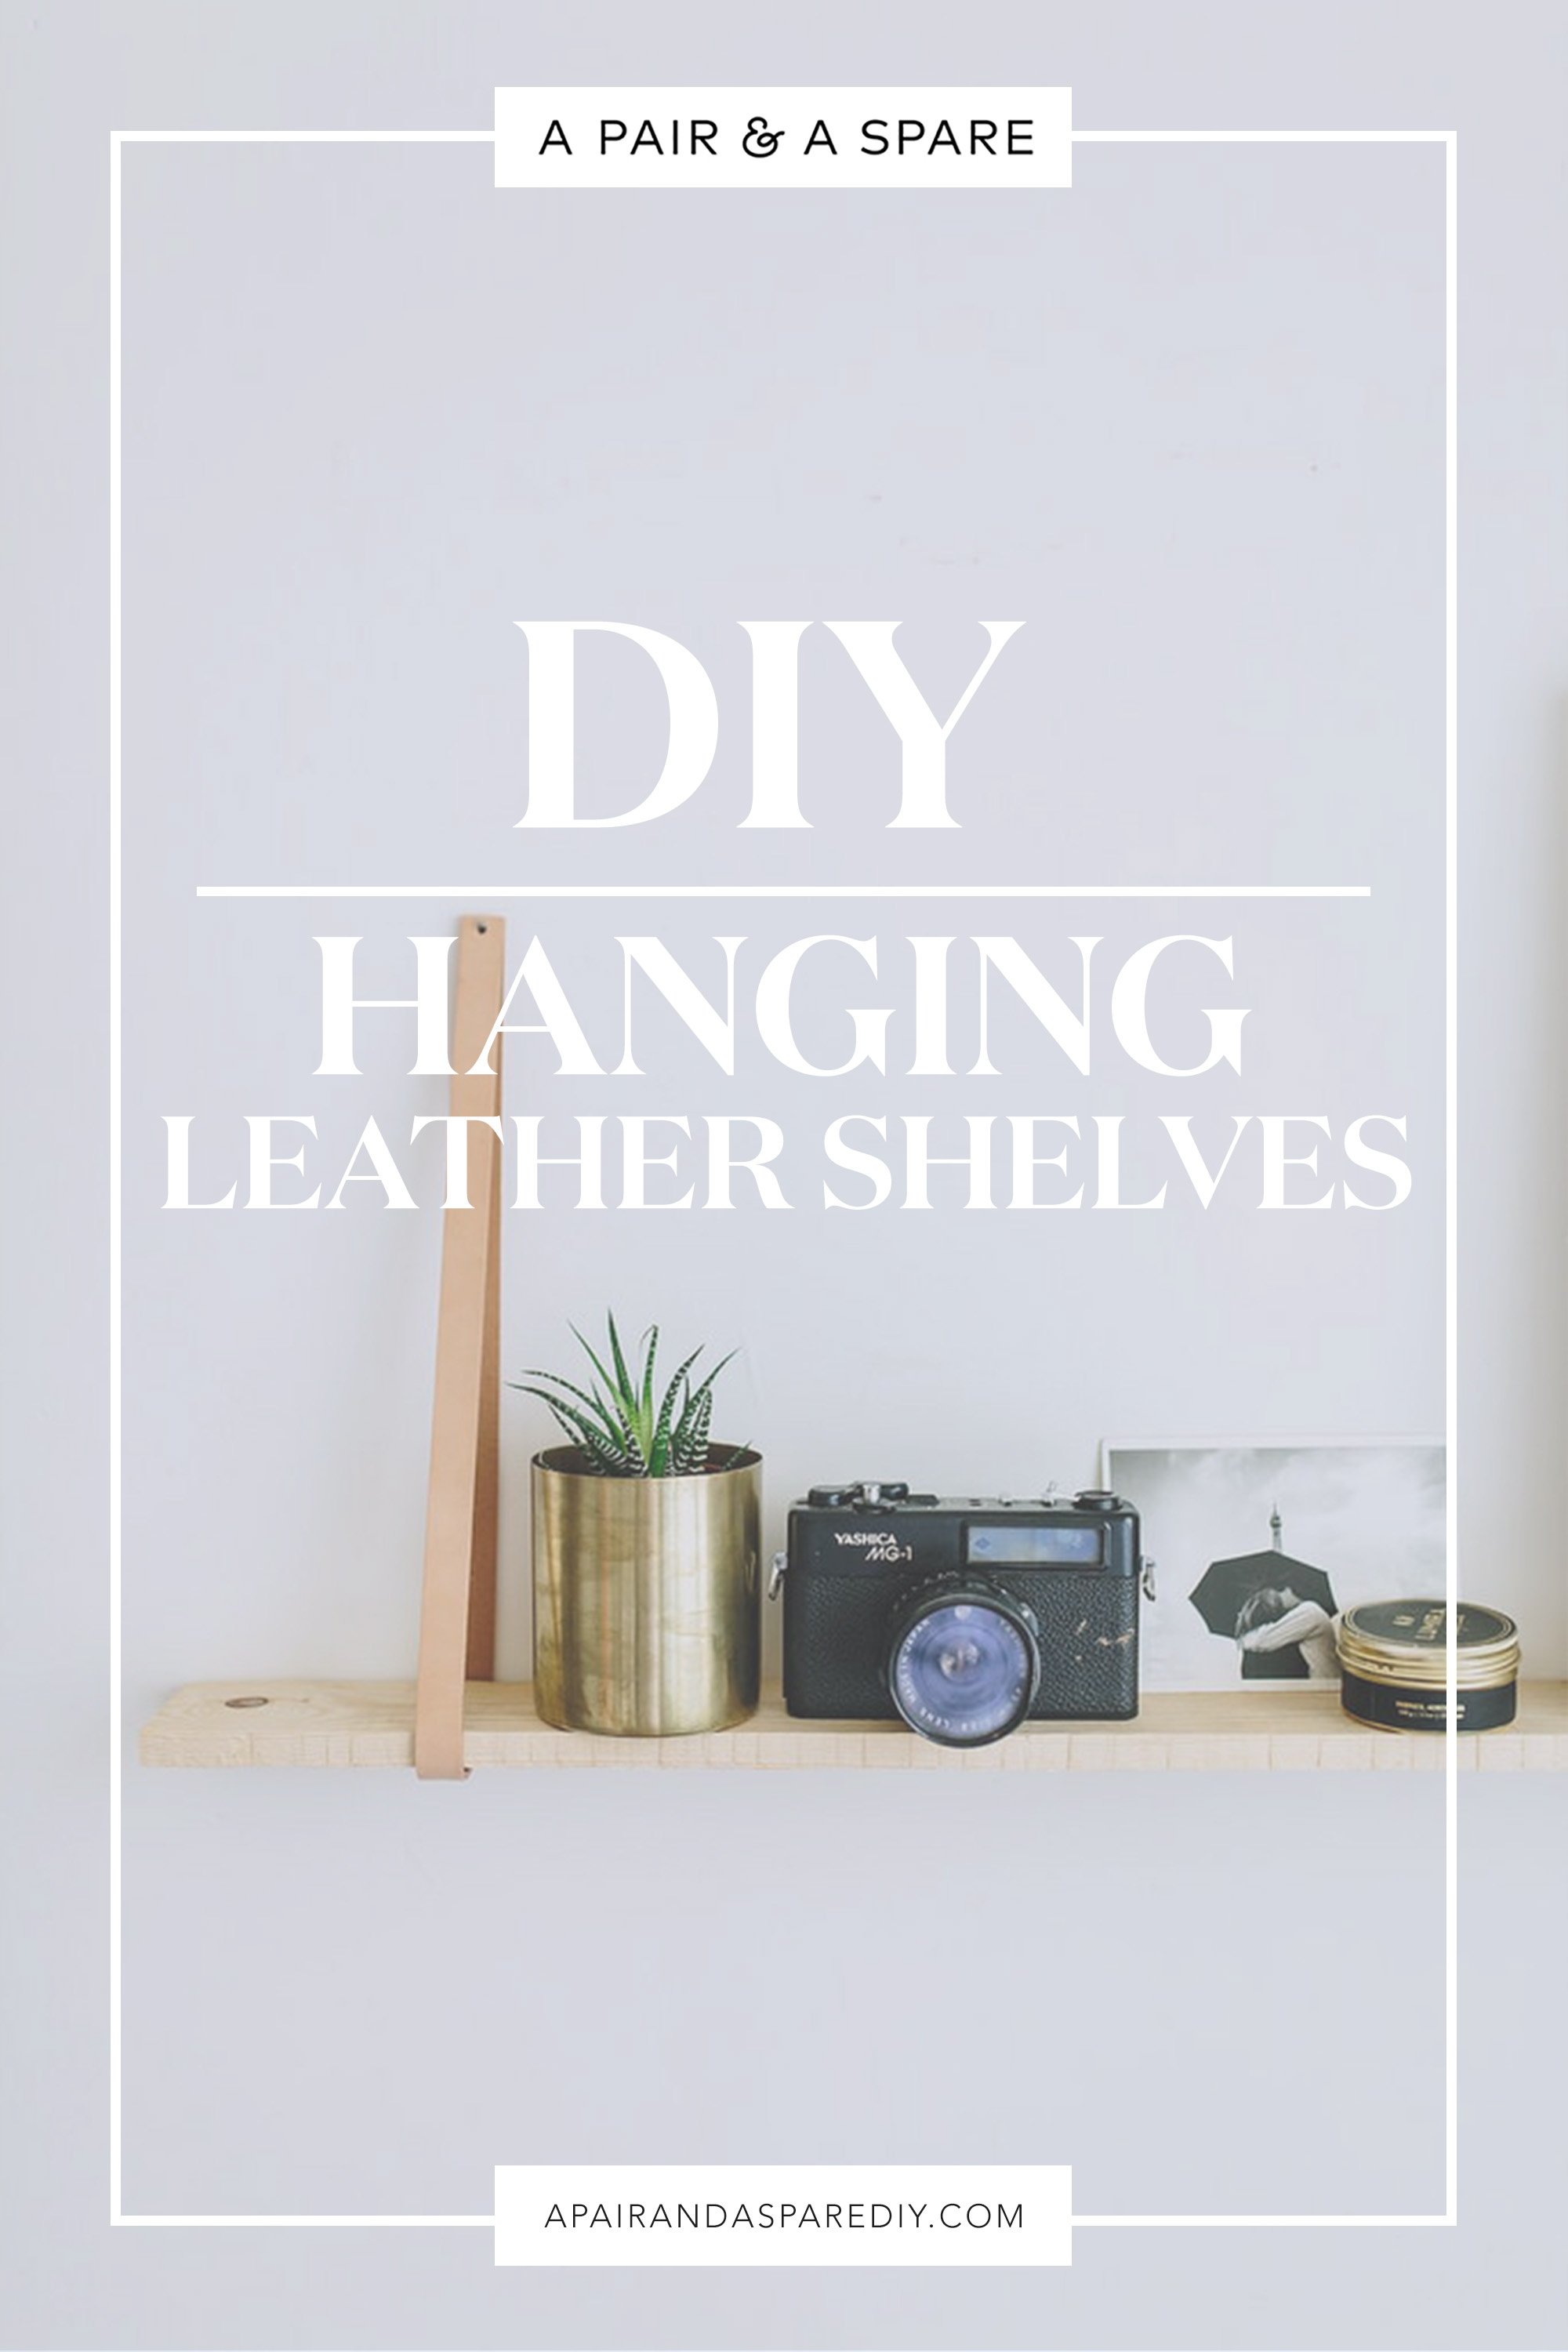 DIY Hanging Leather Shelves